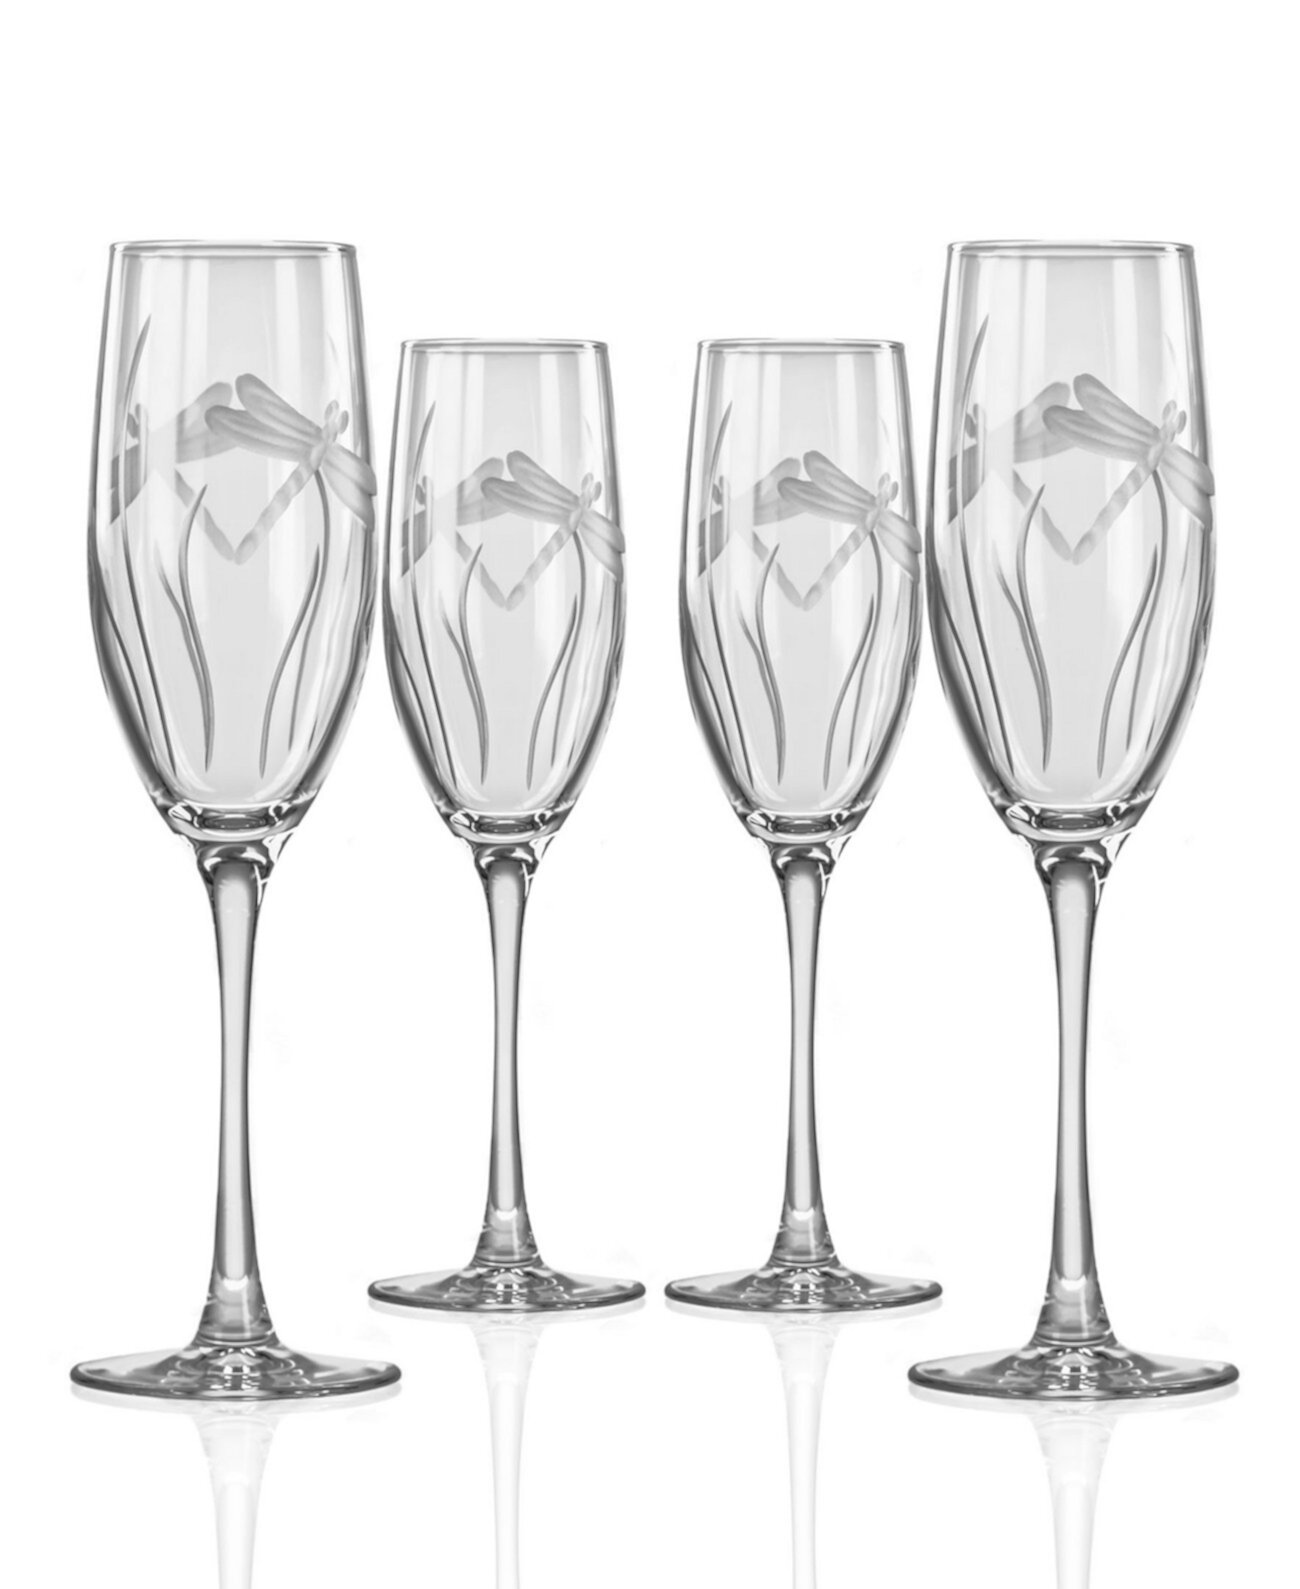 Флейта для шампанского Dragonfly 8 унций - набор из 4 бокалов Rolf Glass